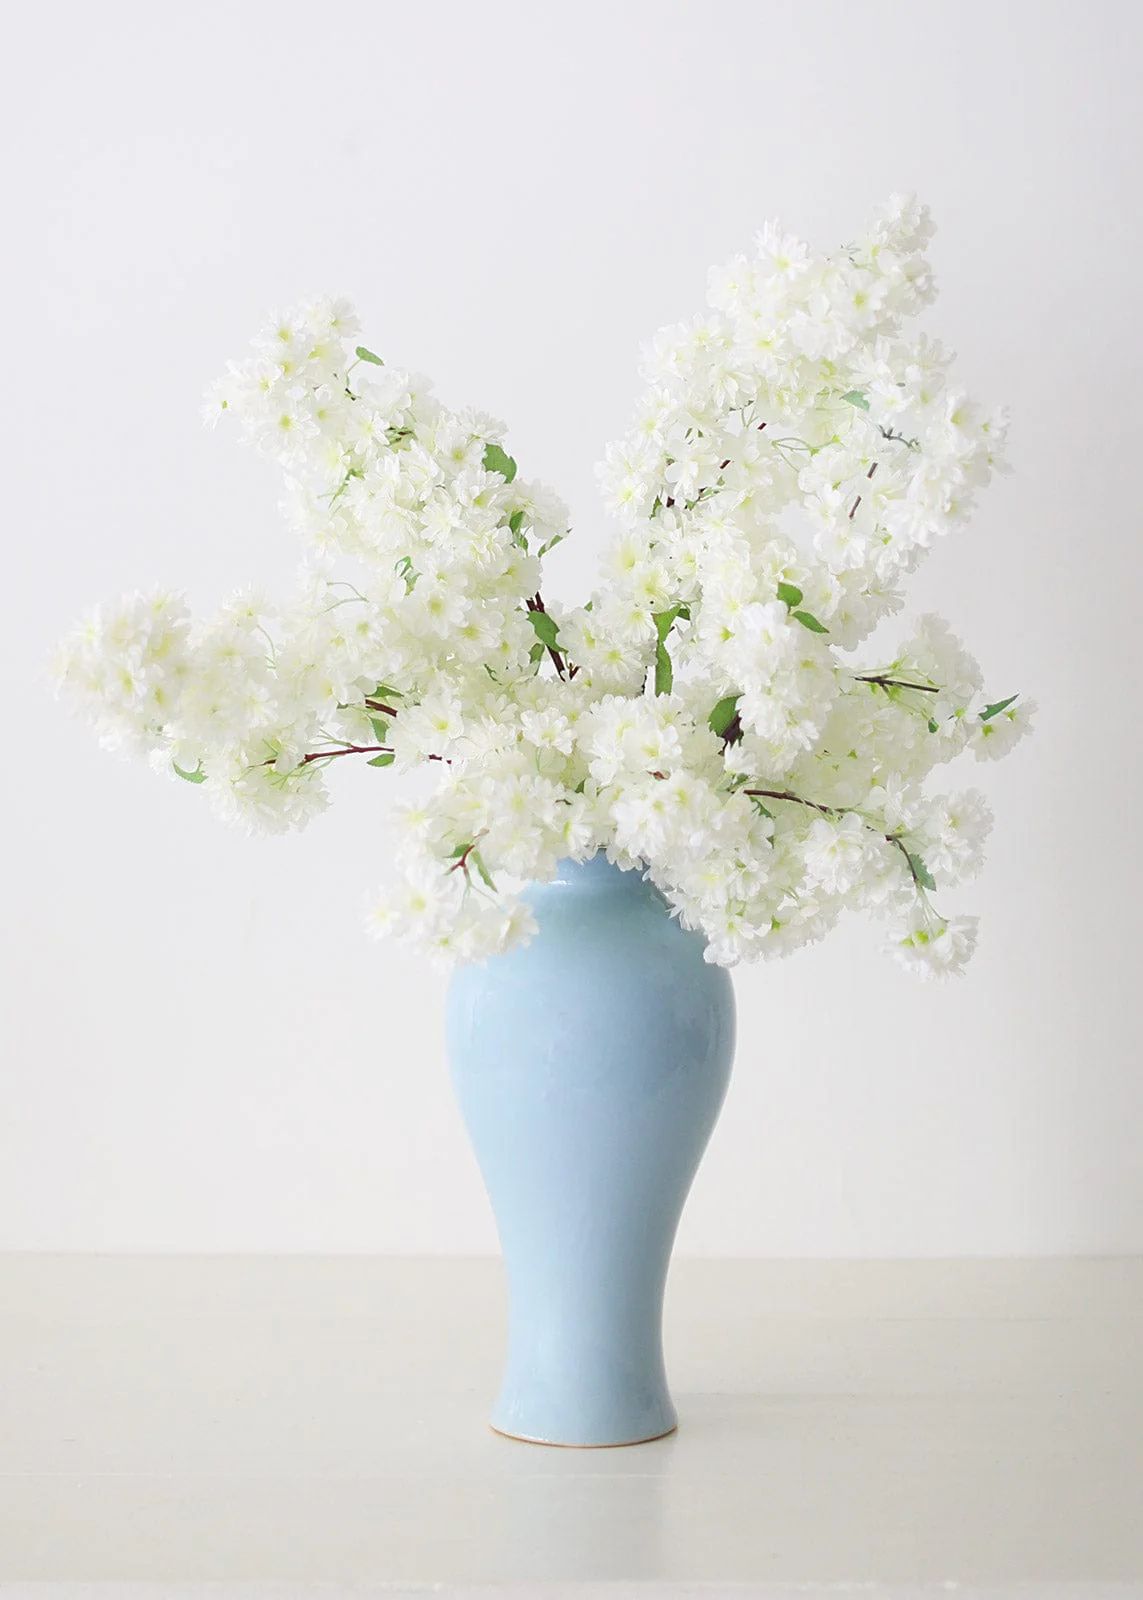 Ceramic Tall Blue Vase | Large Vases for the Home | Afloral.com | Afloral